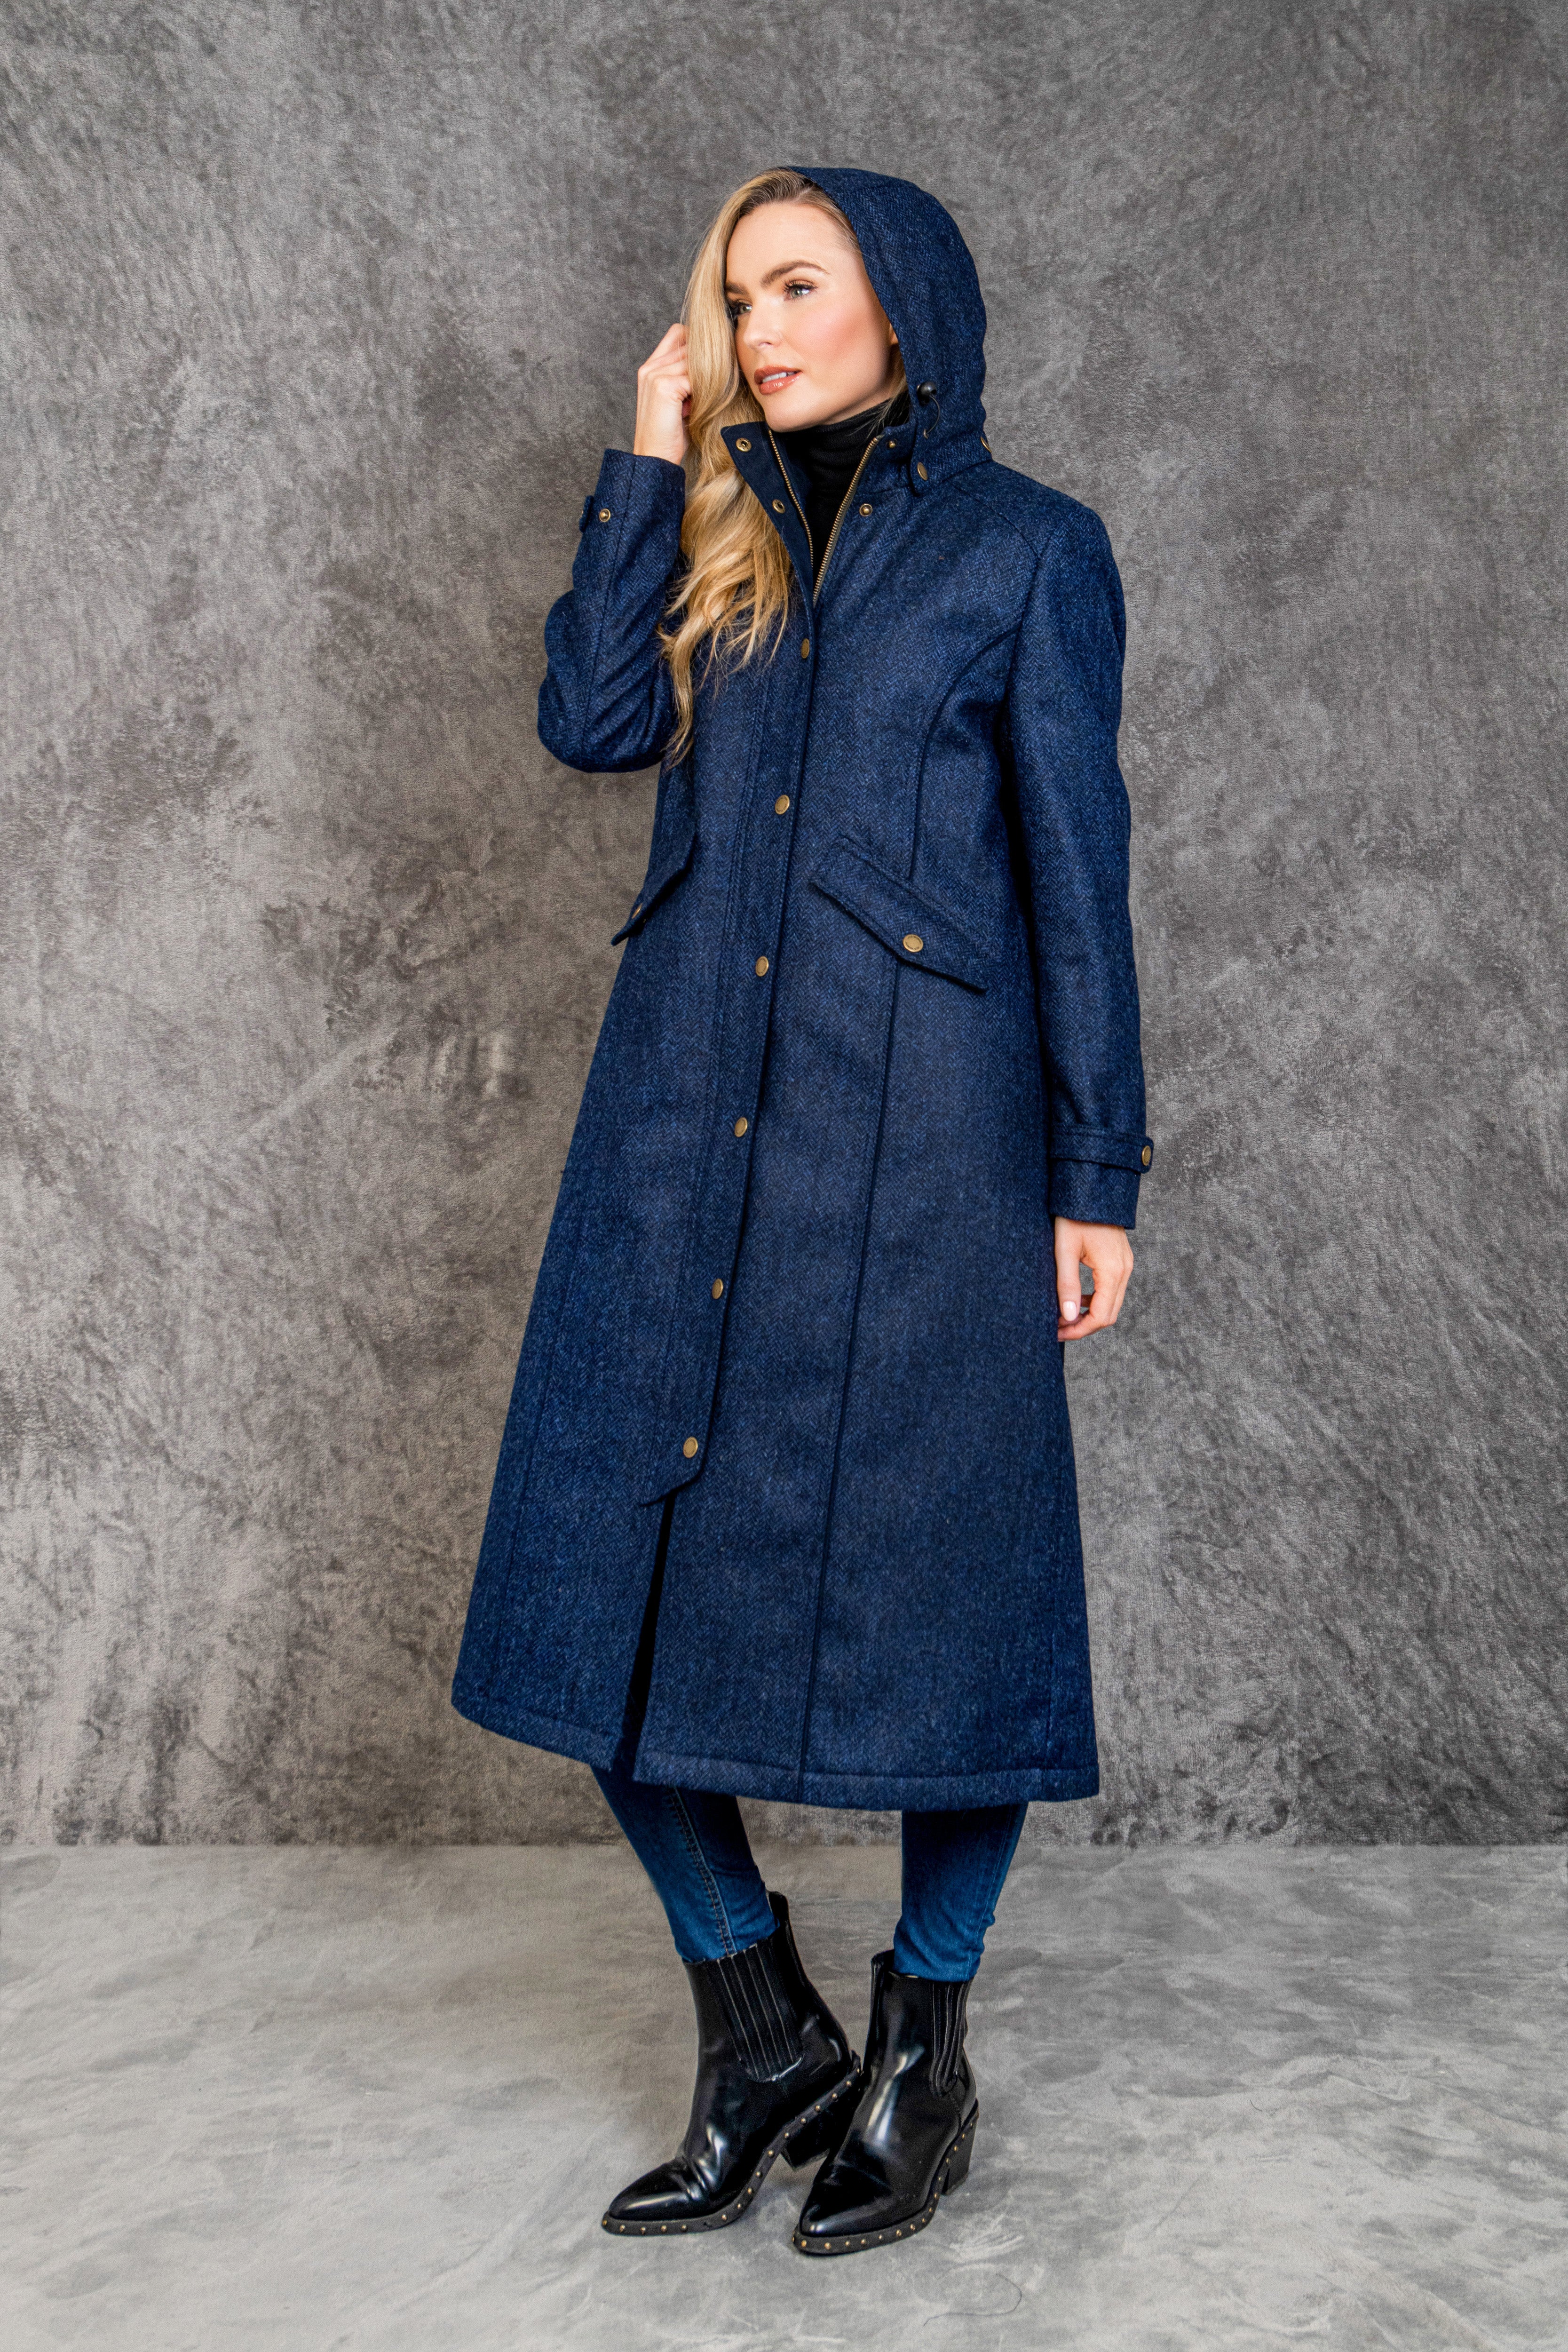 Julia Long Tweed Coat - Navy Herringbone